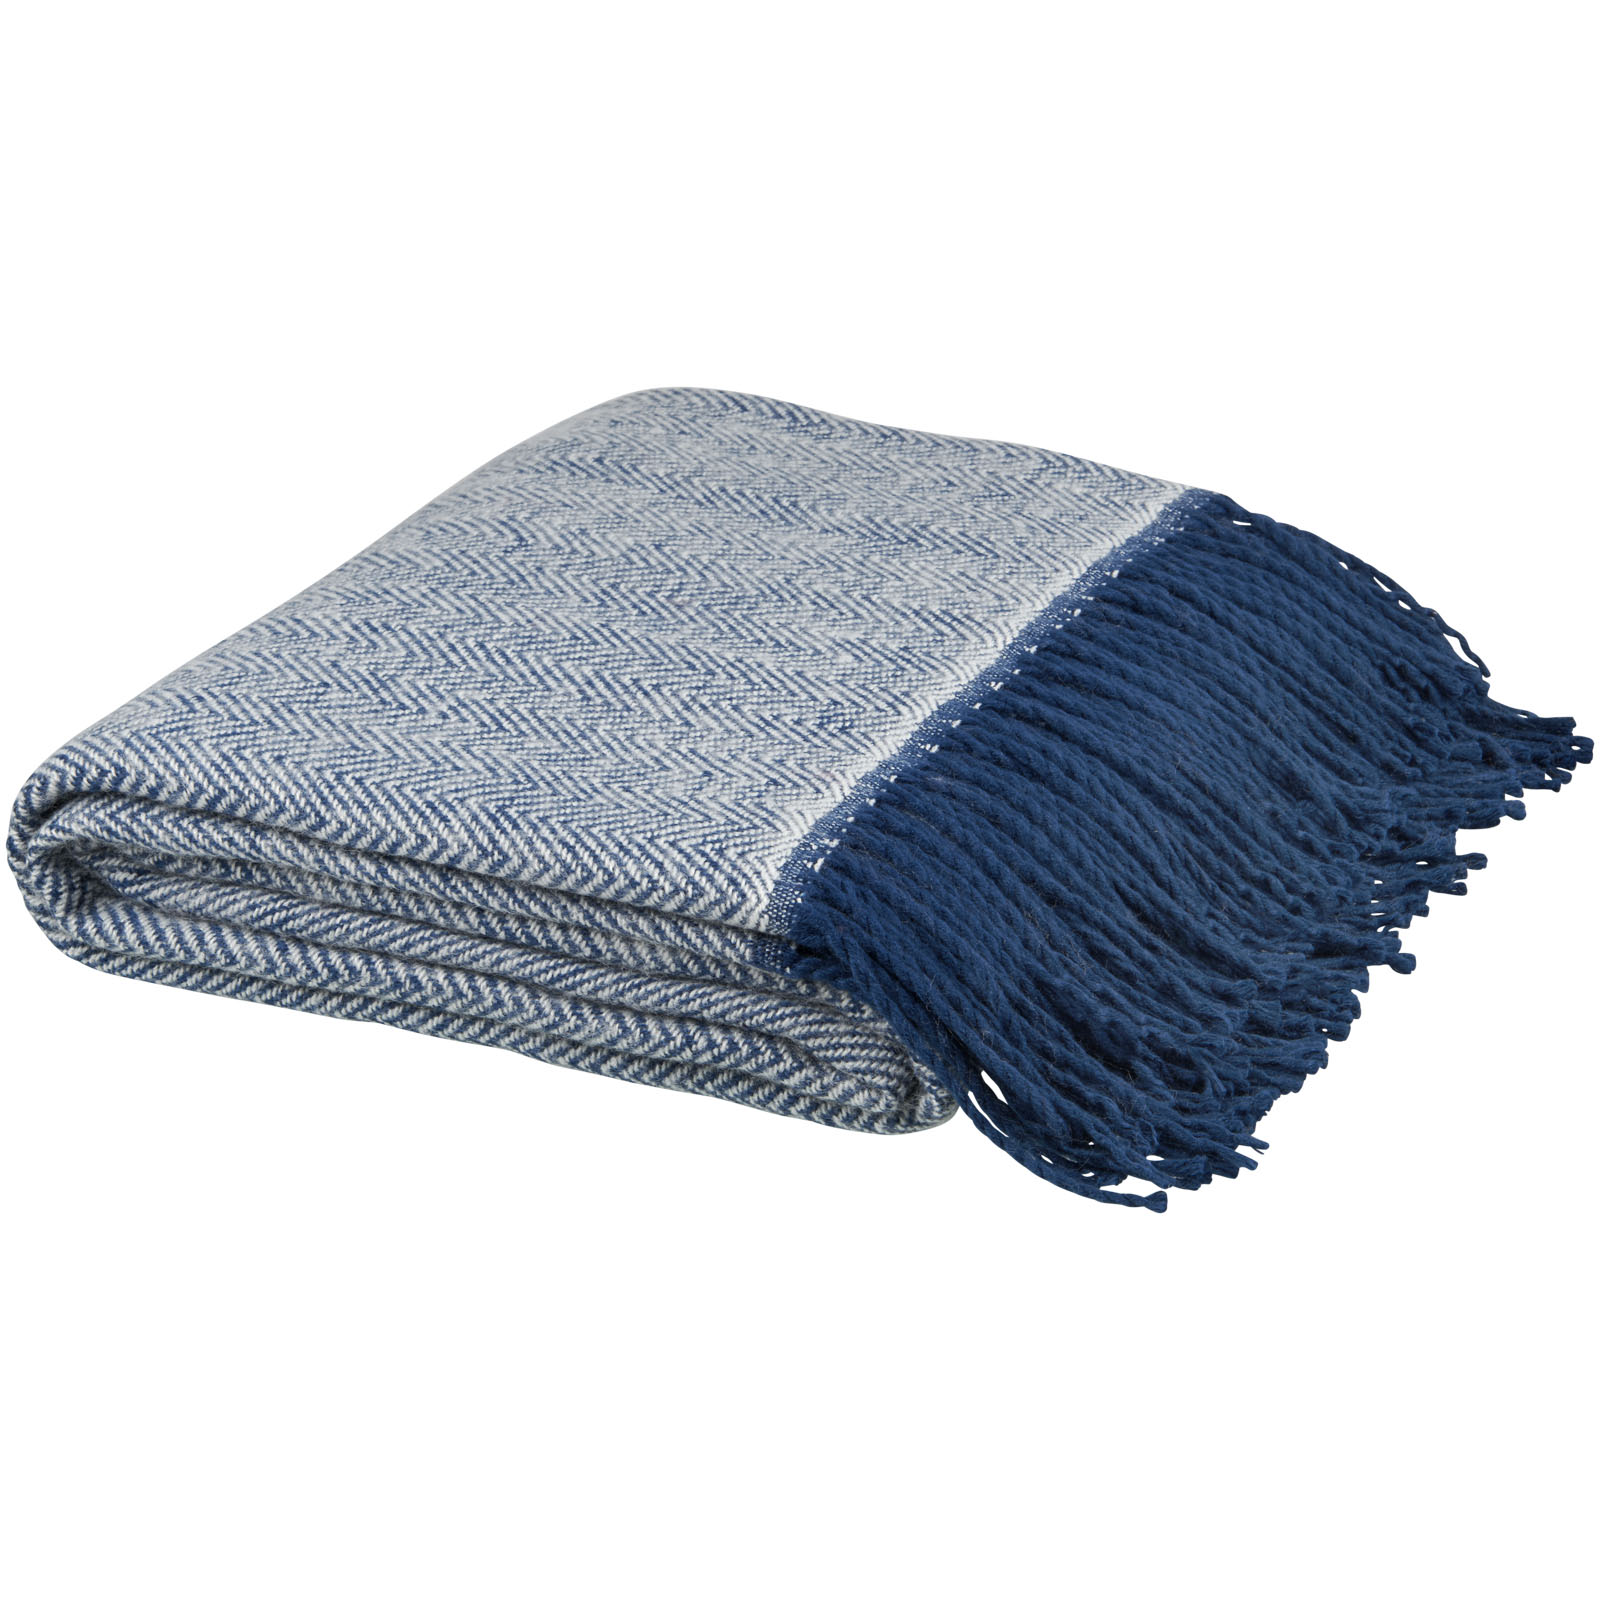 Advertising Blankets - Haven herringbone throw blanket - 2